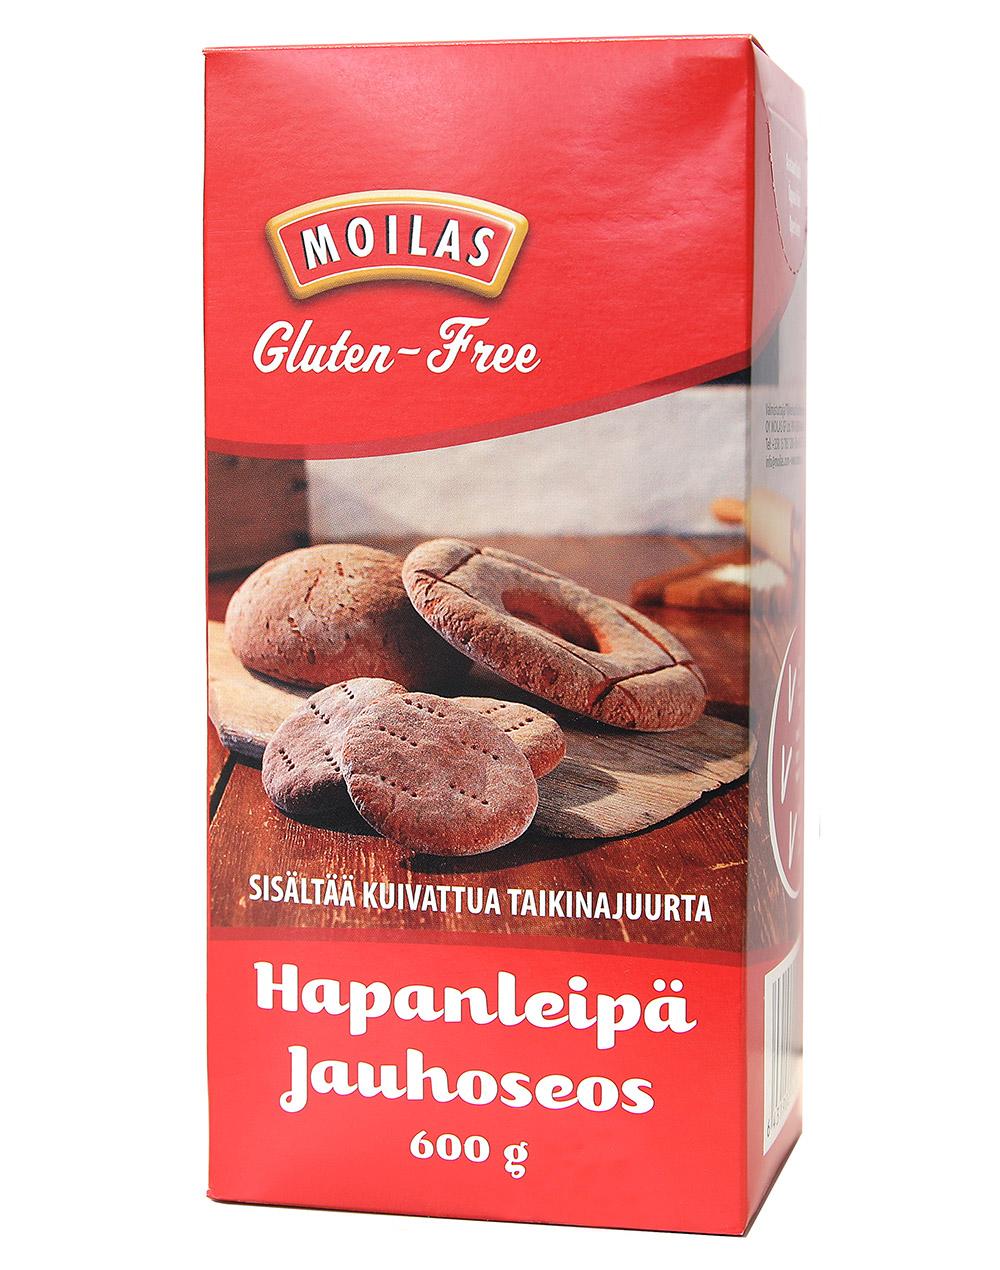 Moilas Gluten-Free Gluteeniton Hapanleipäjauhoseos, 600g